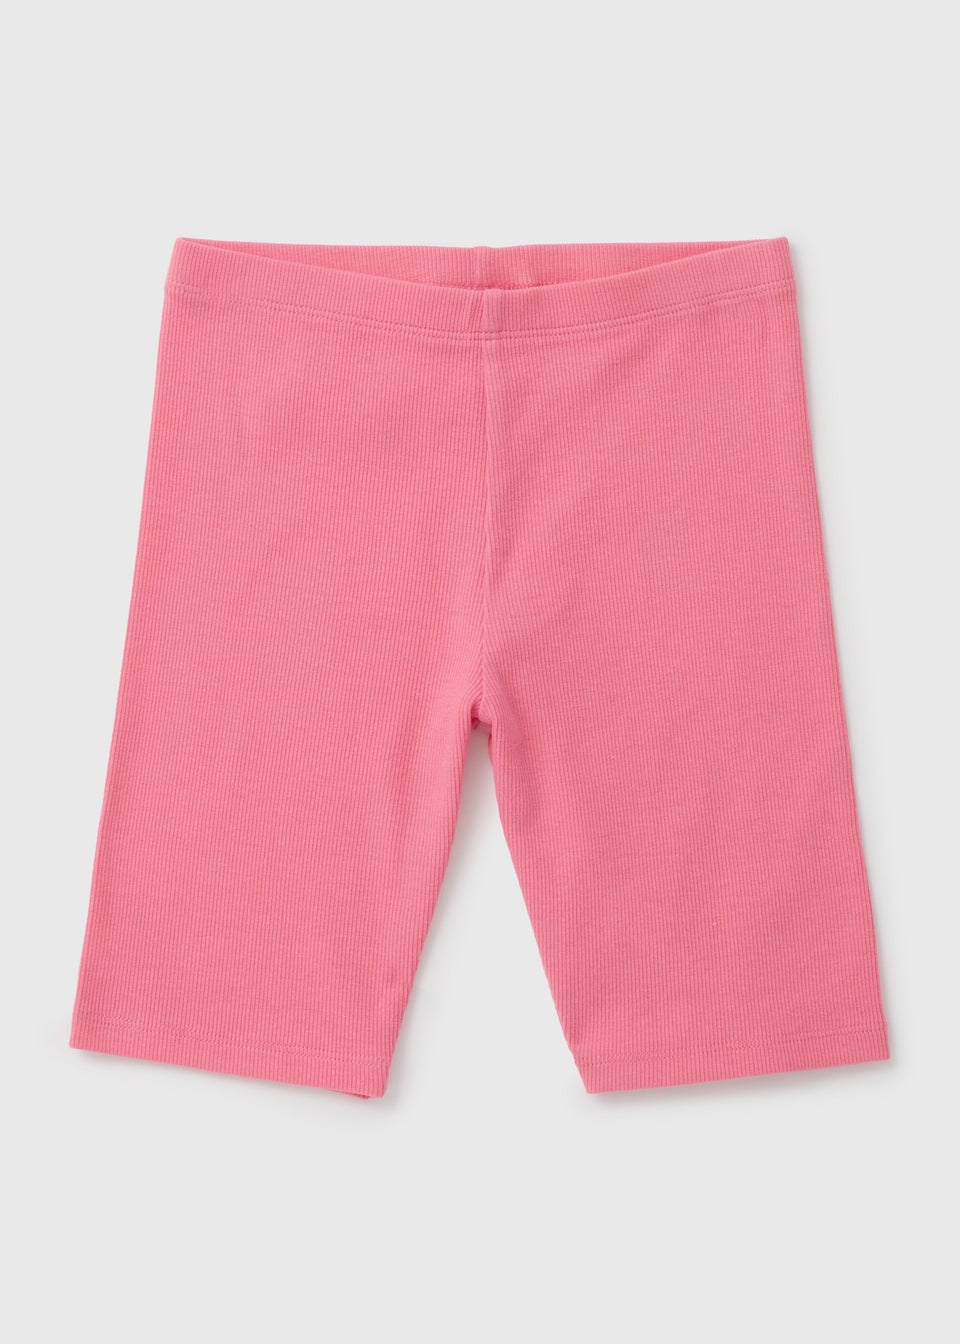 Girls Pink Shorts (7-13yrs)